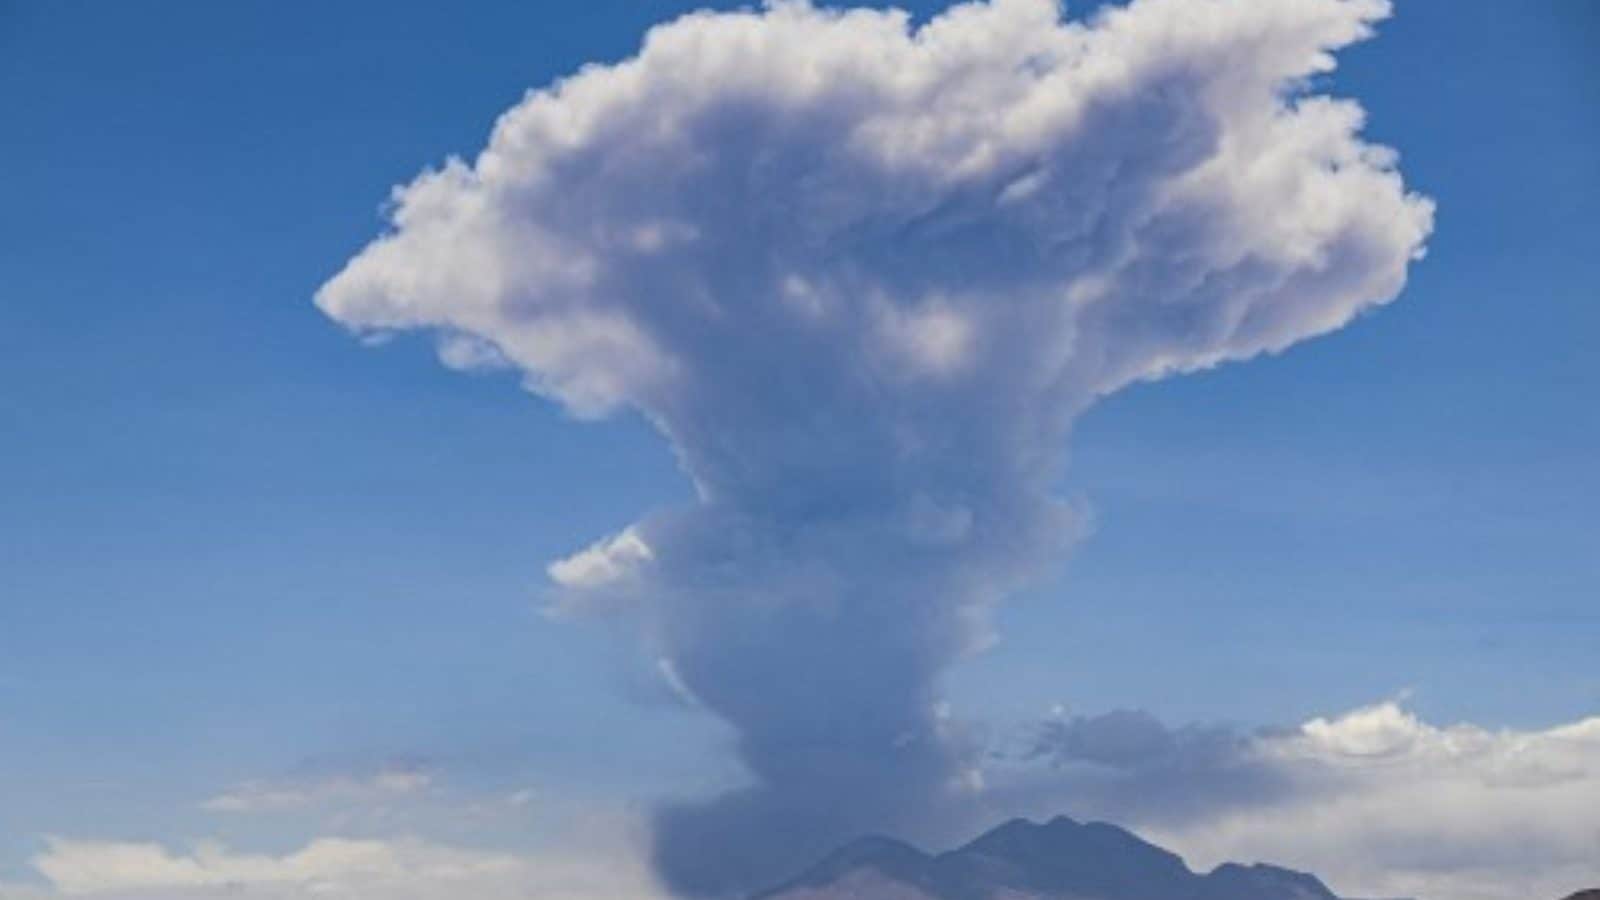 Volcán Lascar en los Andes chilenos retumba, envía columnas de humo, ceniza 6 km en el cielo